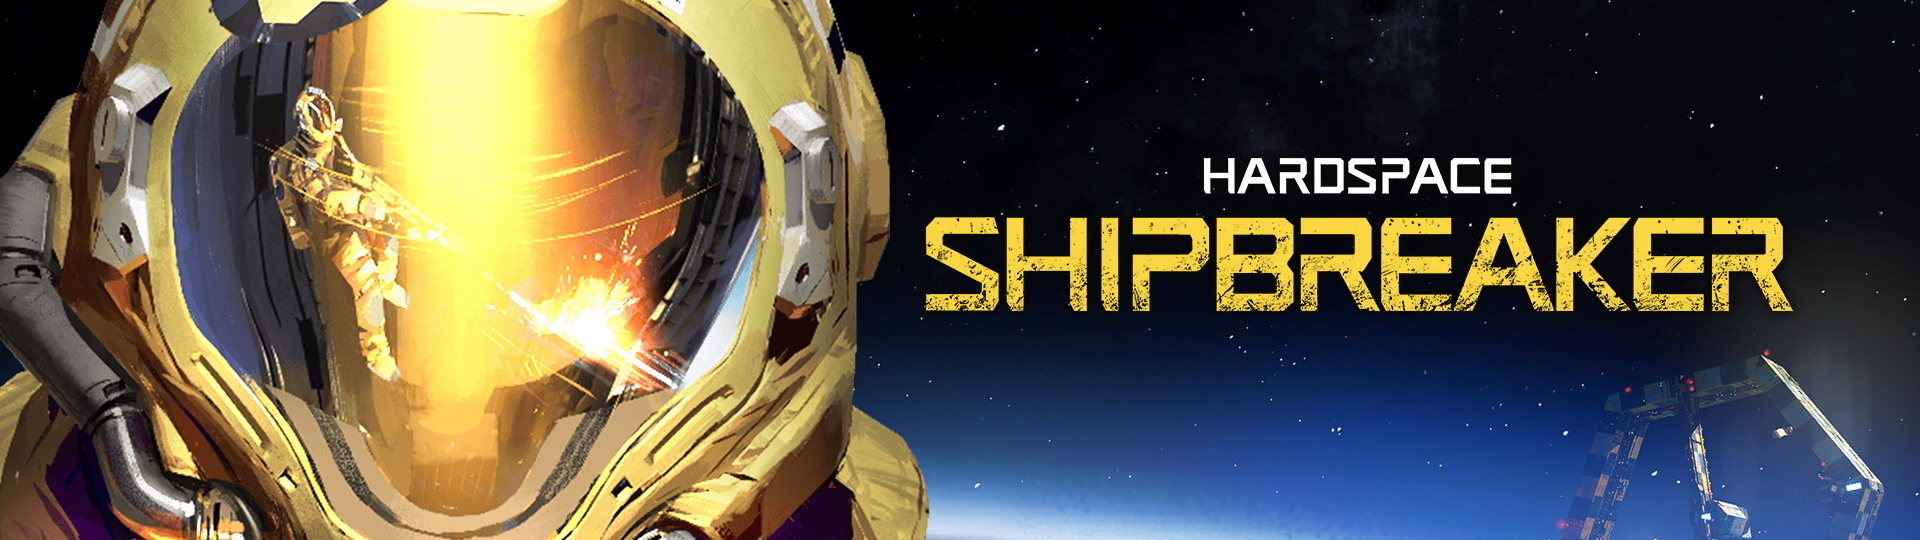 Hardspace: Shipbreaker vás nechá rozebírat vesmírné vraky | Videa